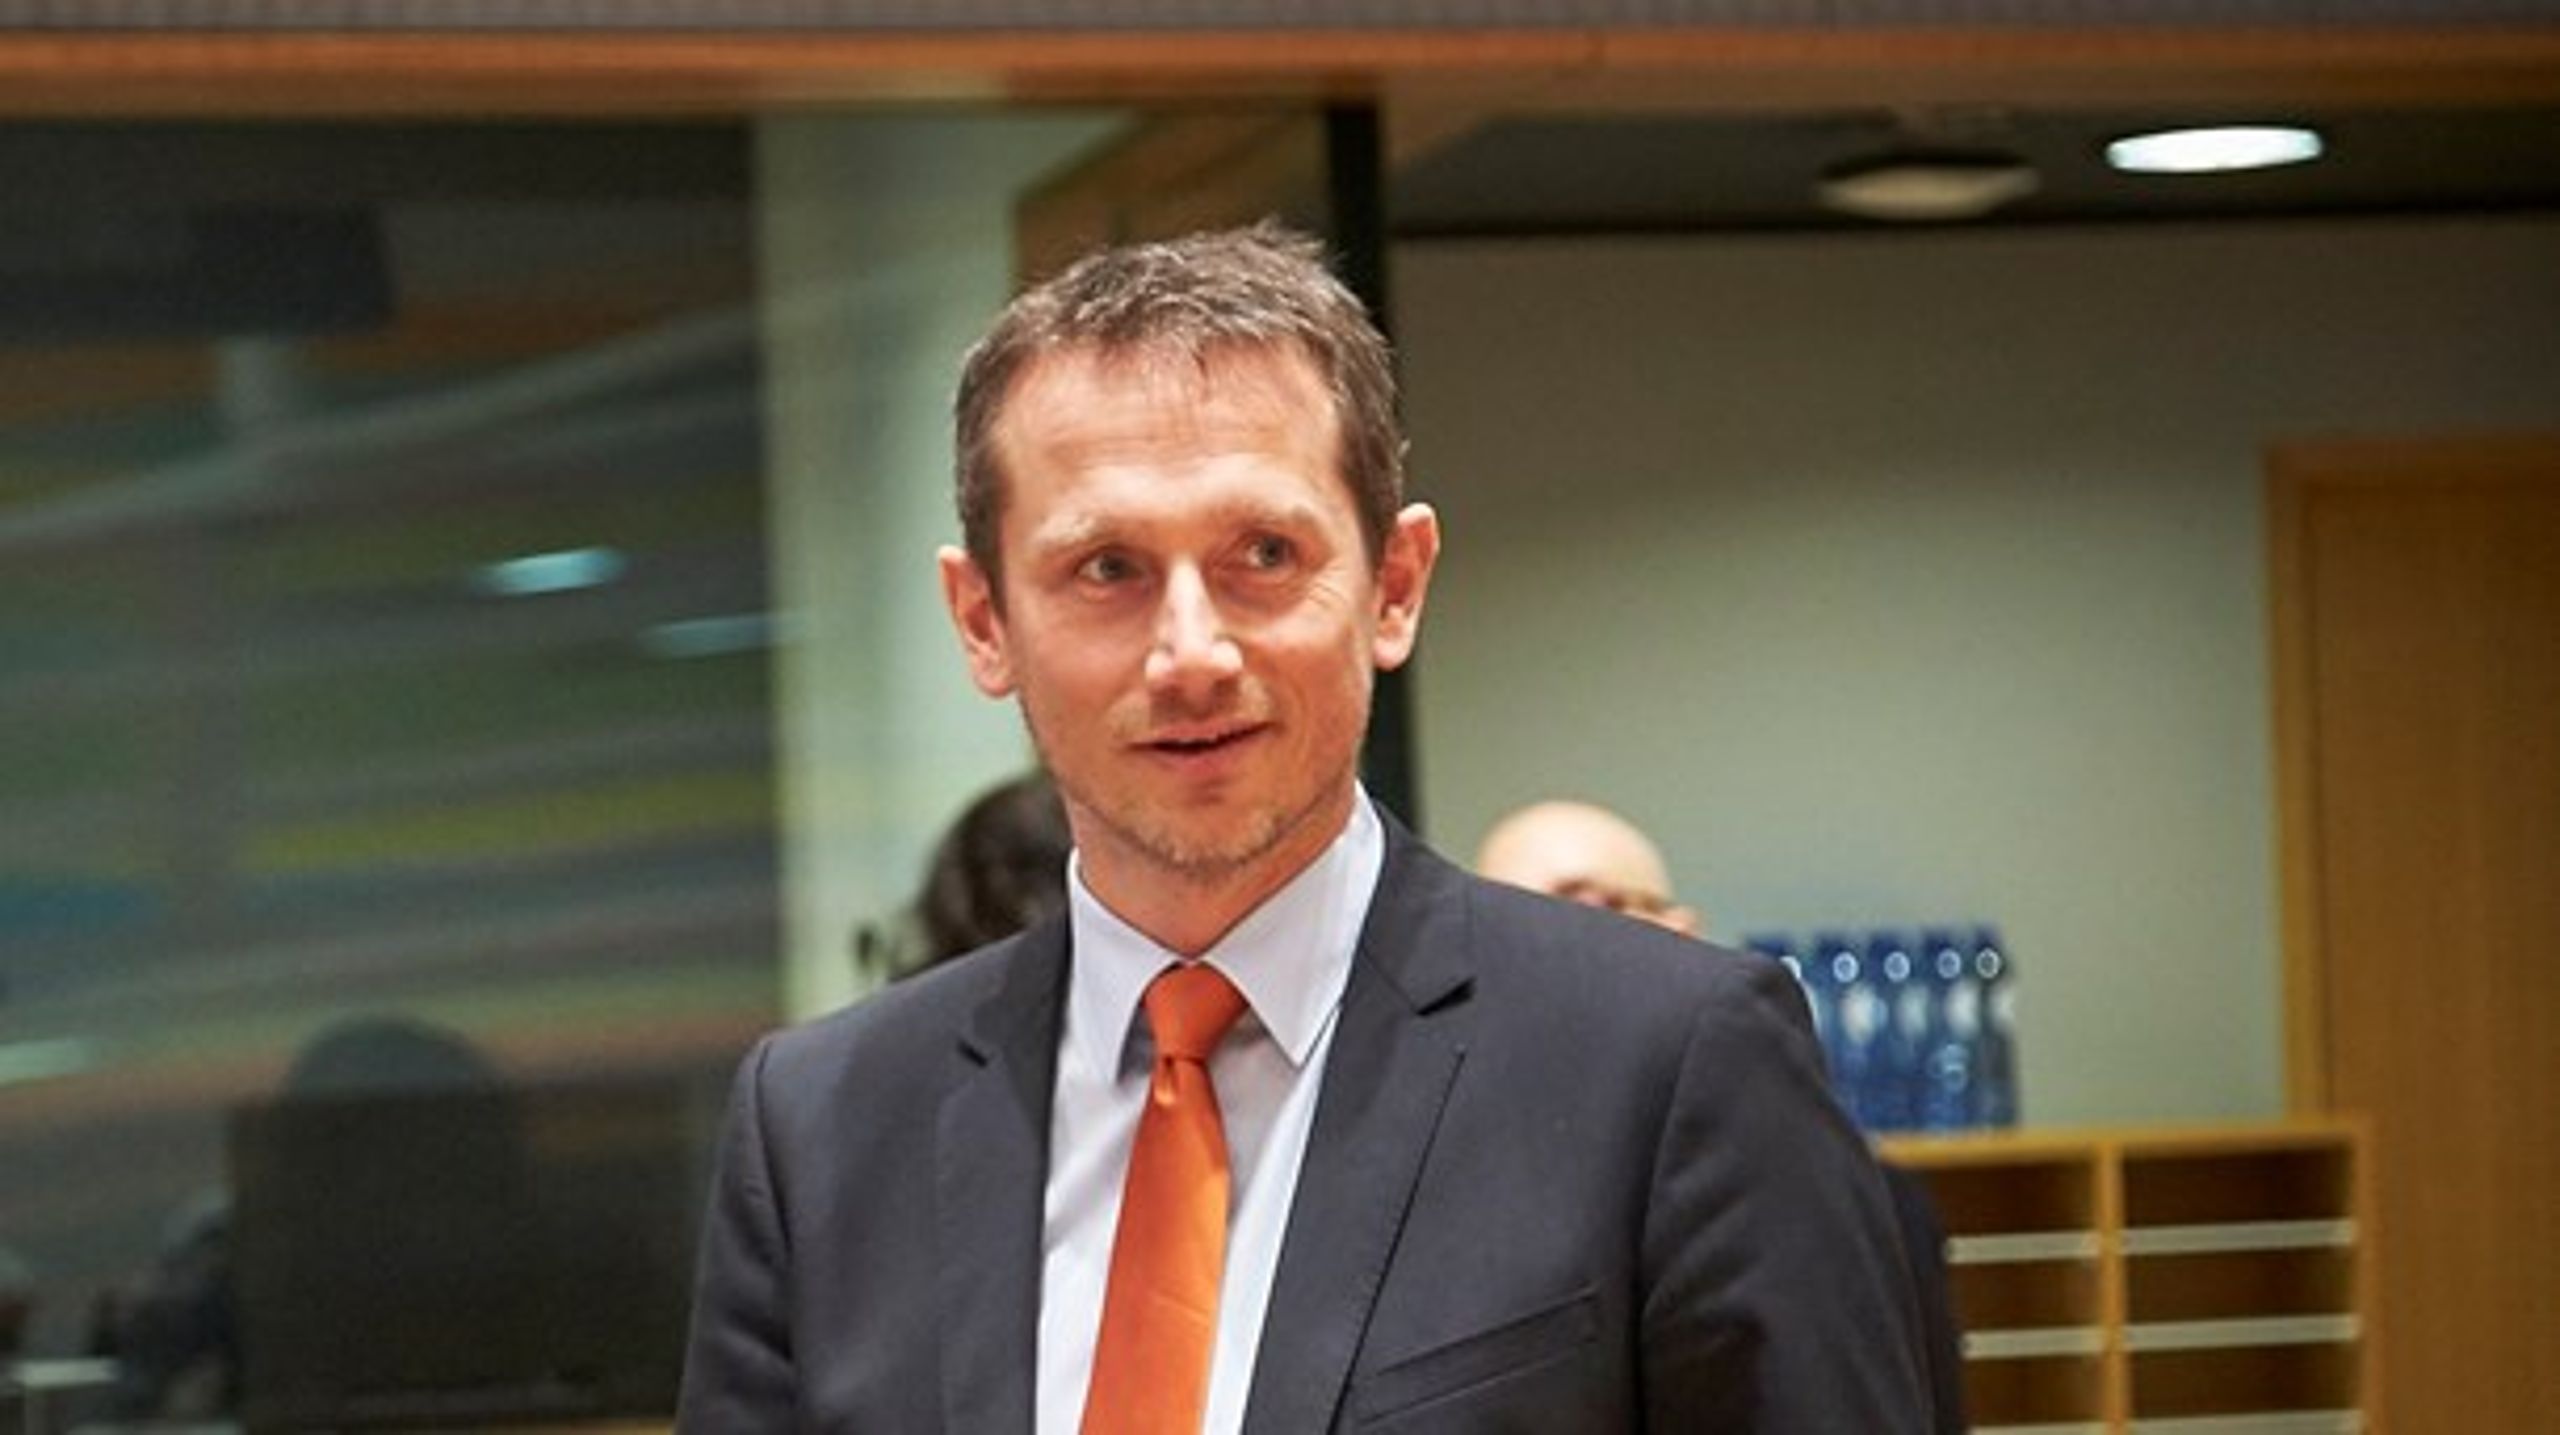 Finansminister Kristian Jensen slog tirsdag i Bruxelles et slag for flere danskere i EU's institutioner.